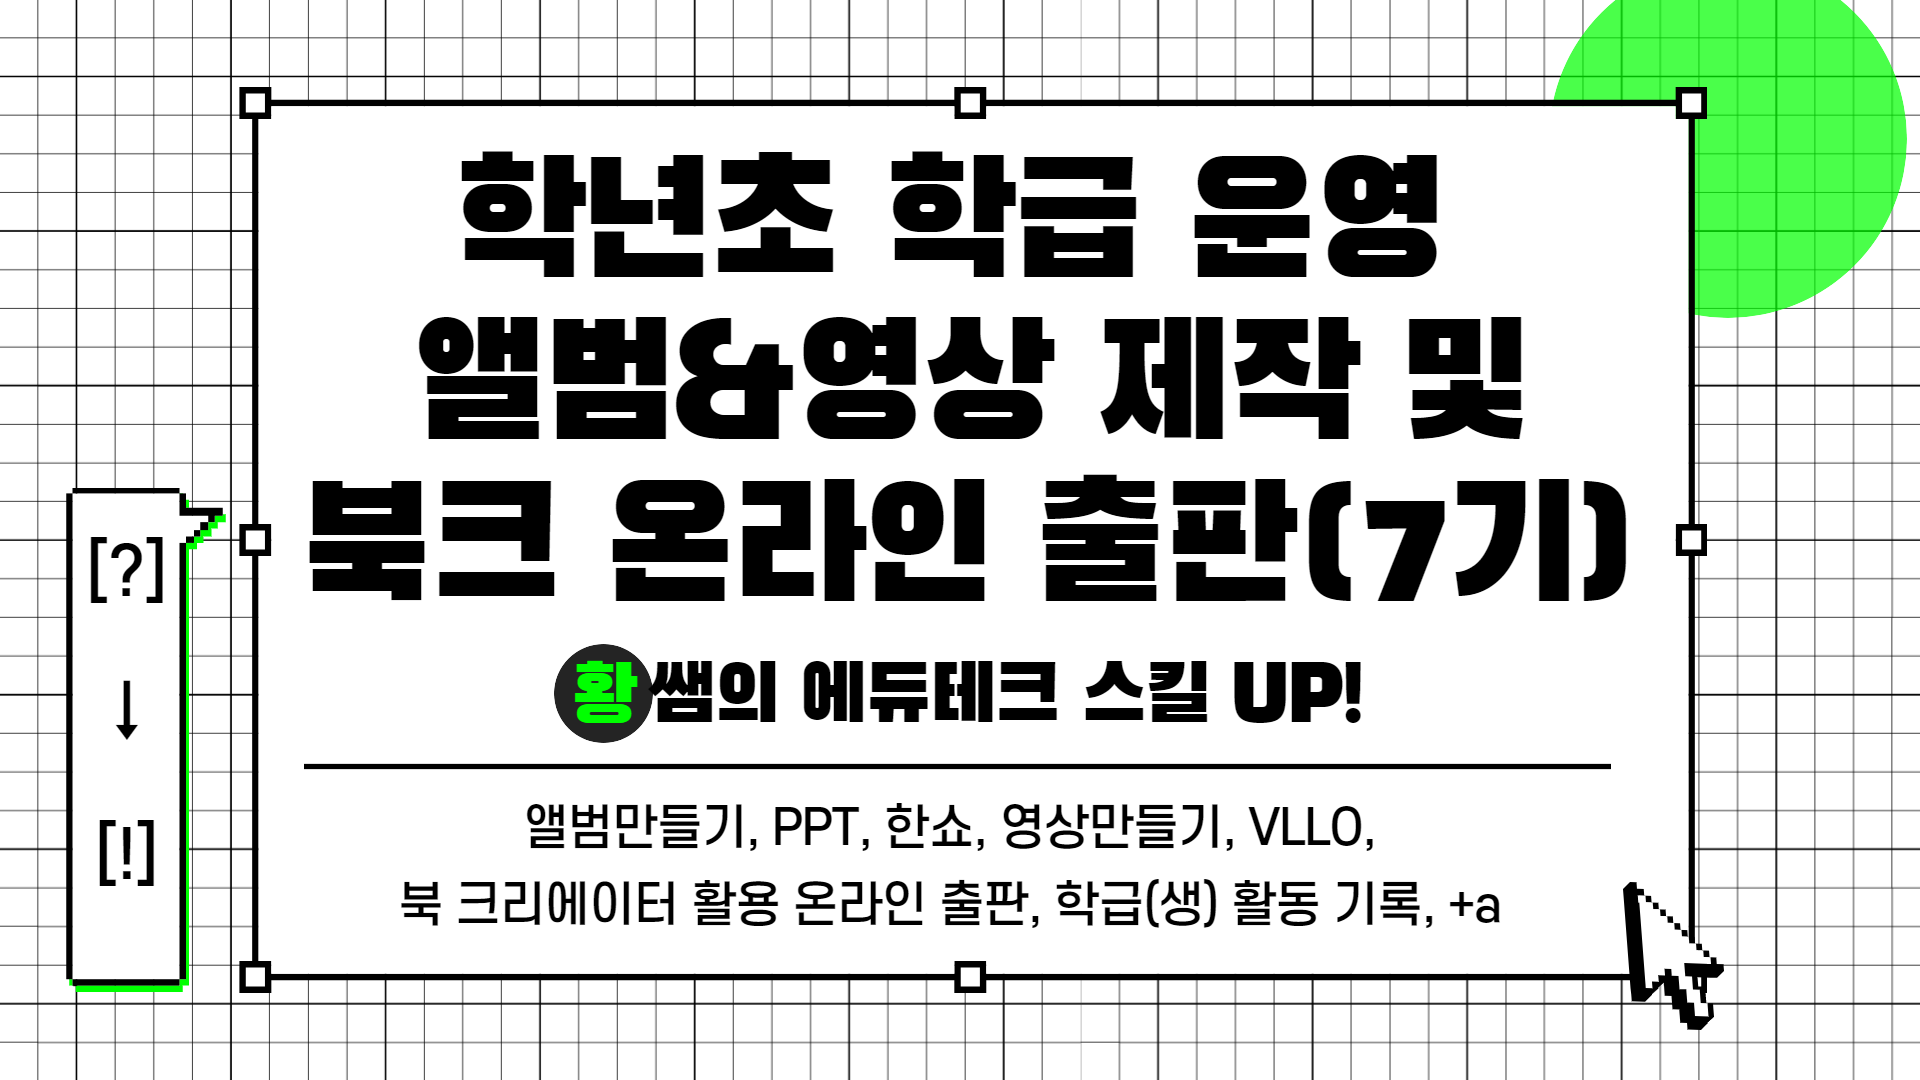 [?] → [!] 황쌤의 에듀테크 스킬 UP!(학급 운영 앨범&영상 제작 및 온라인 출판(7기))